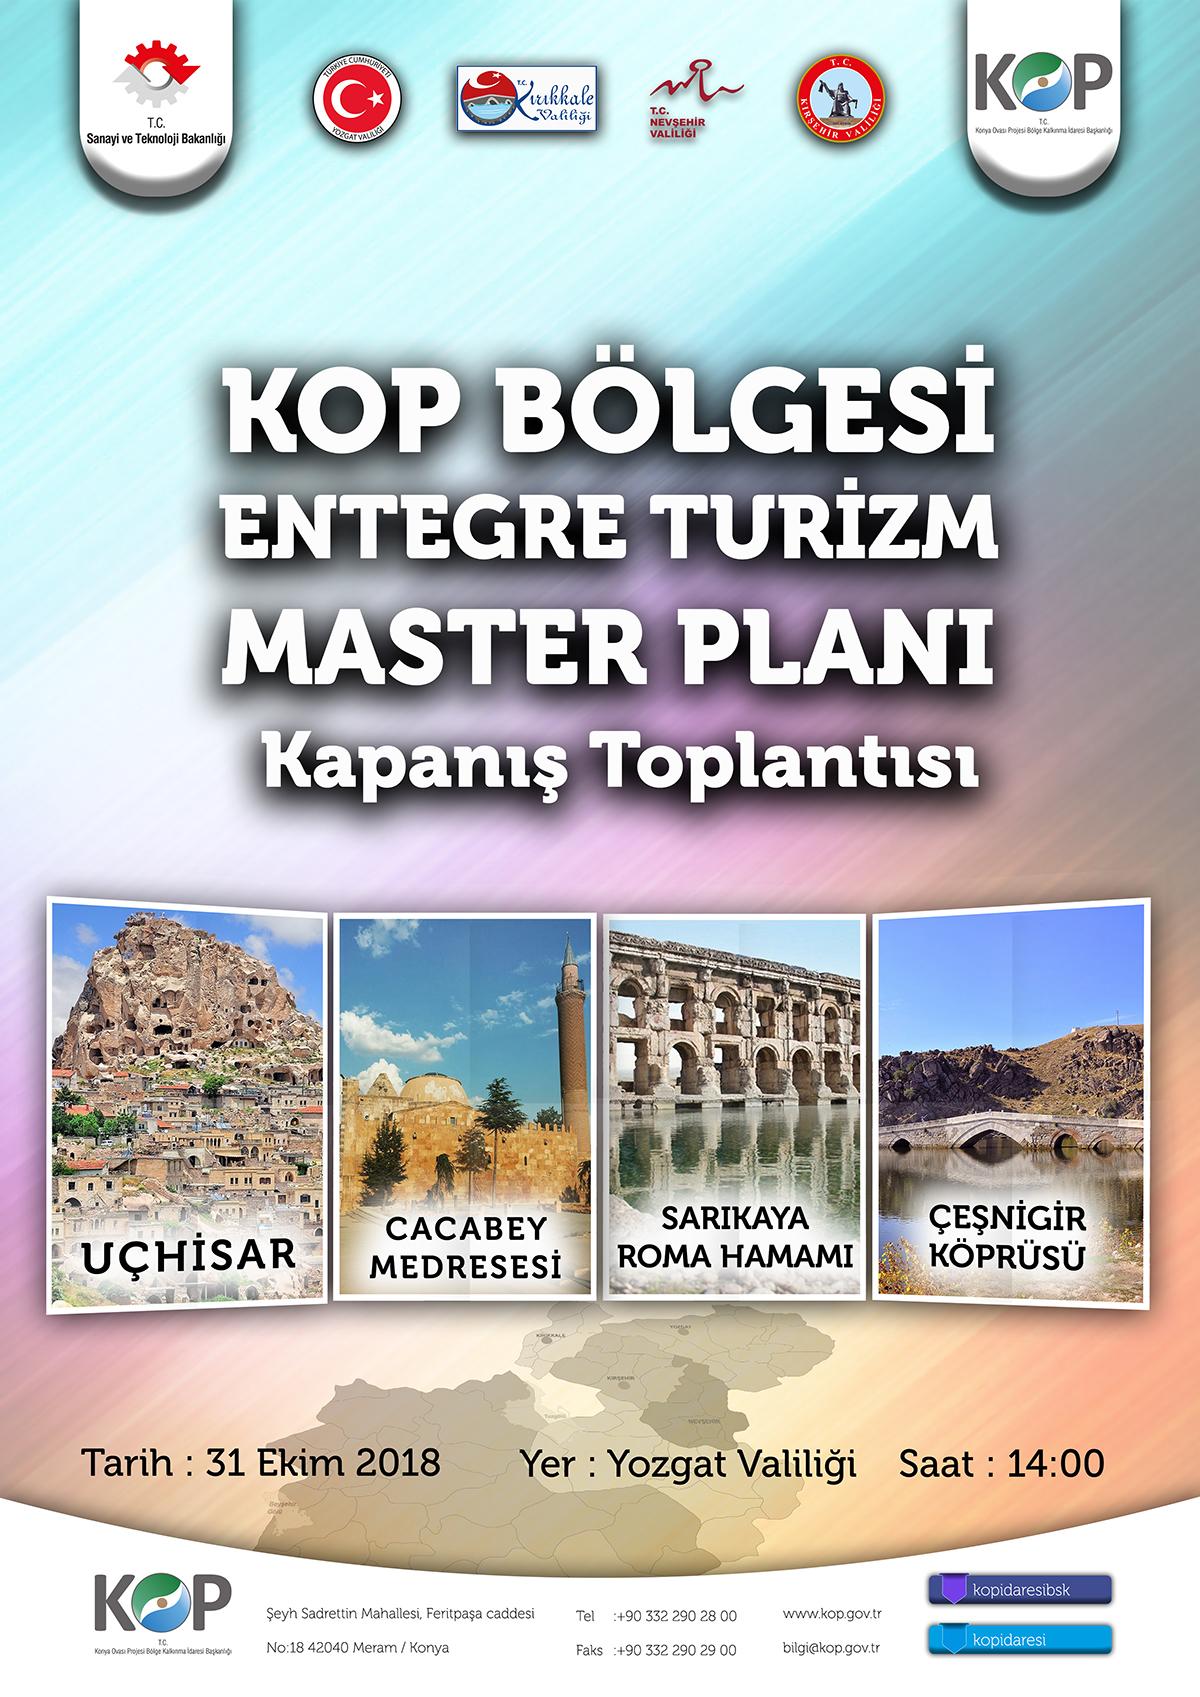 KOP, Nevşehir, Yozgat, Kırıkkale ve Kırşehir için Turizm Master Planı Hazırladı - Kırıkkale Haber, Son Dakika Kırıkkale Haberleri